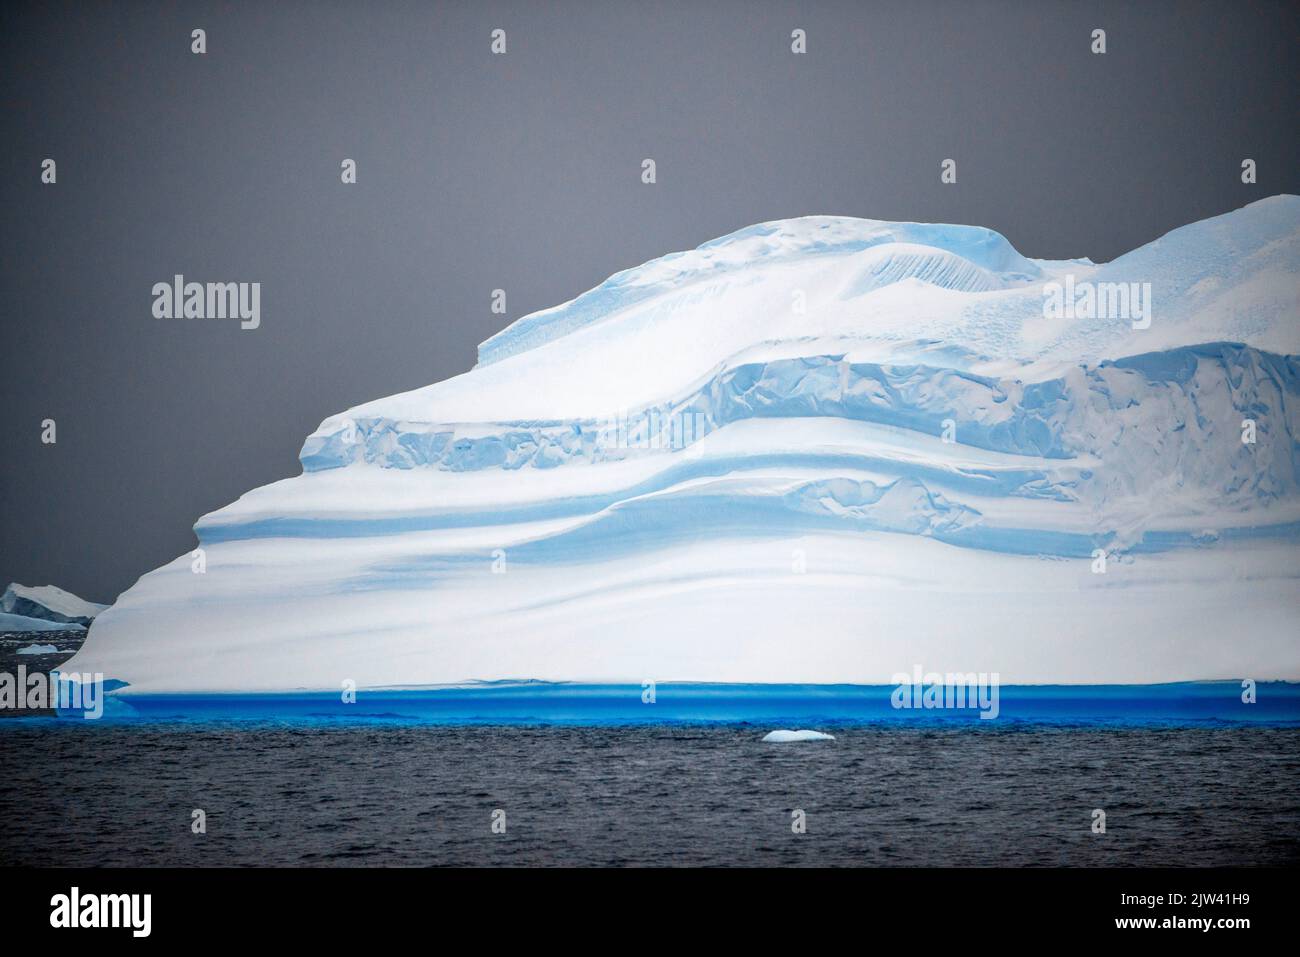 Grand iceberg et ciel moody Portal point Antarctique Peninsula Antarctique. Fusion des pôles. L'Antarctique est le continent qui souffre le plus de la mondialisation Banque D'Images